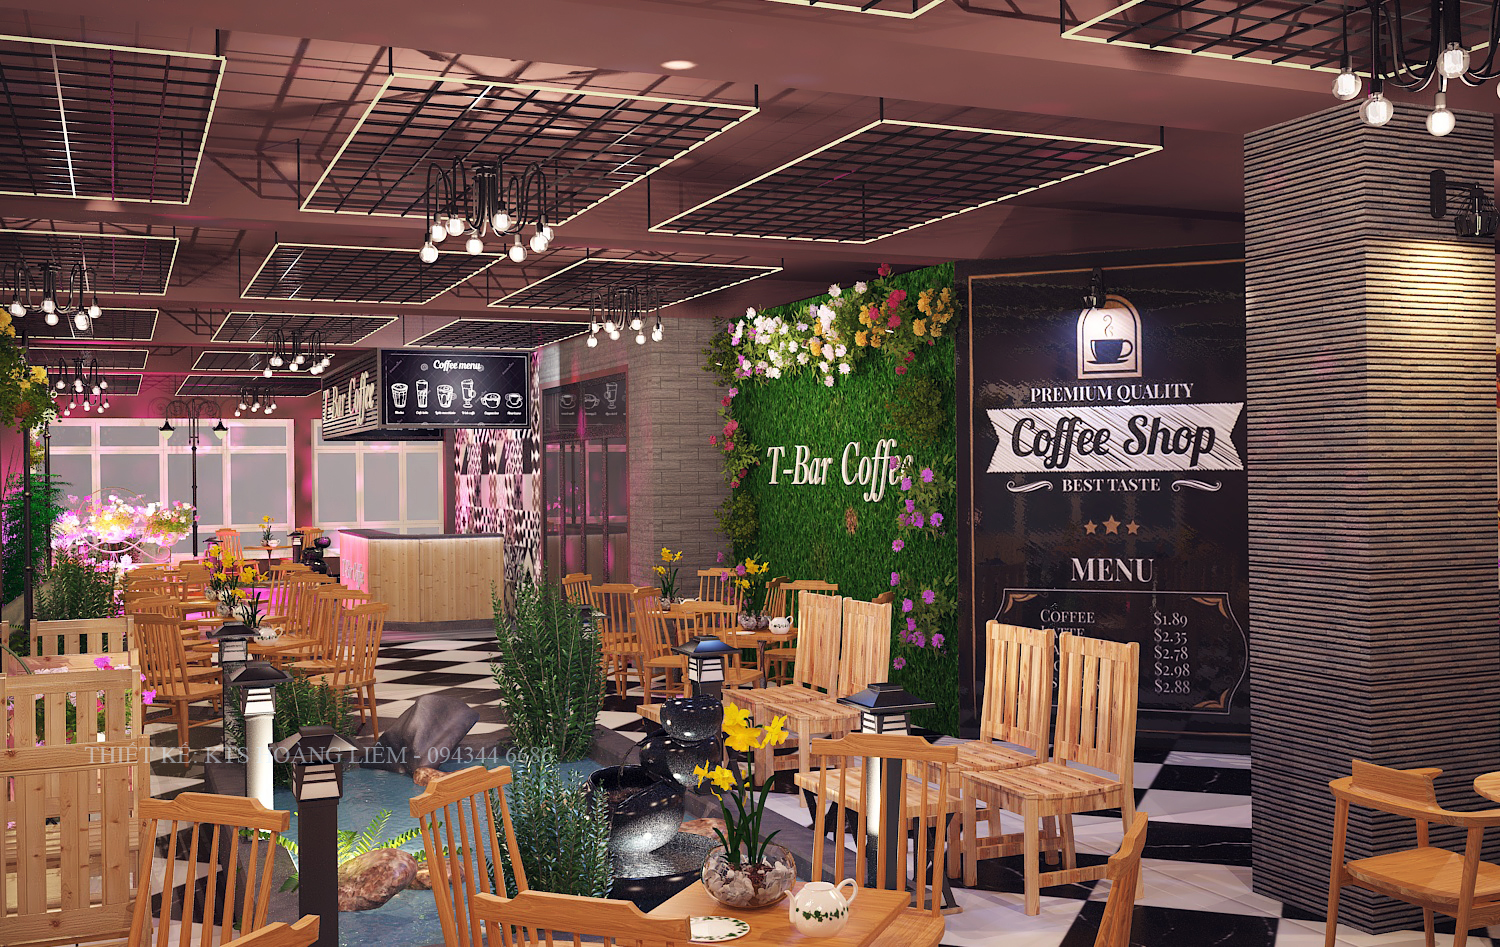 Thiết kế nội thất Cafe tại Vĩnh Phúc Thiết kế không gian cafe Vĩnh Phúc 1576581383 1